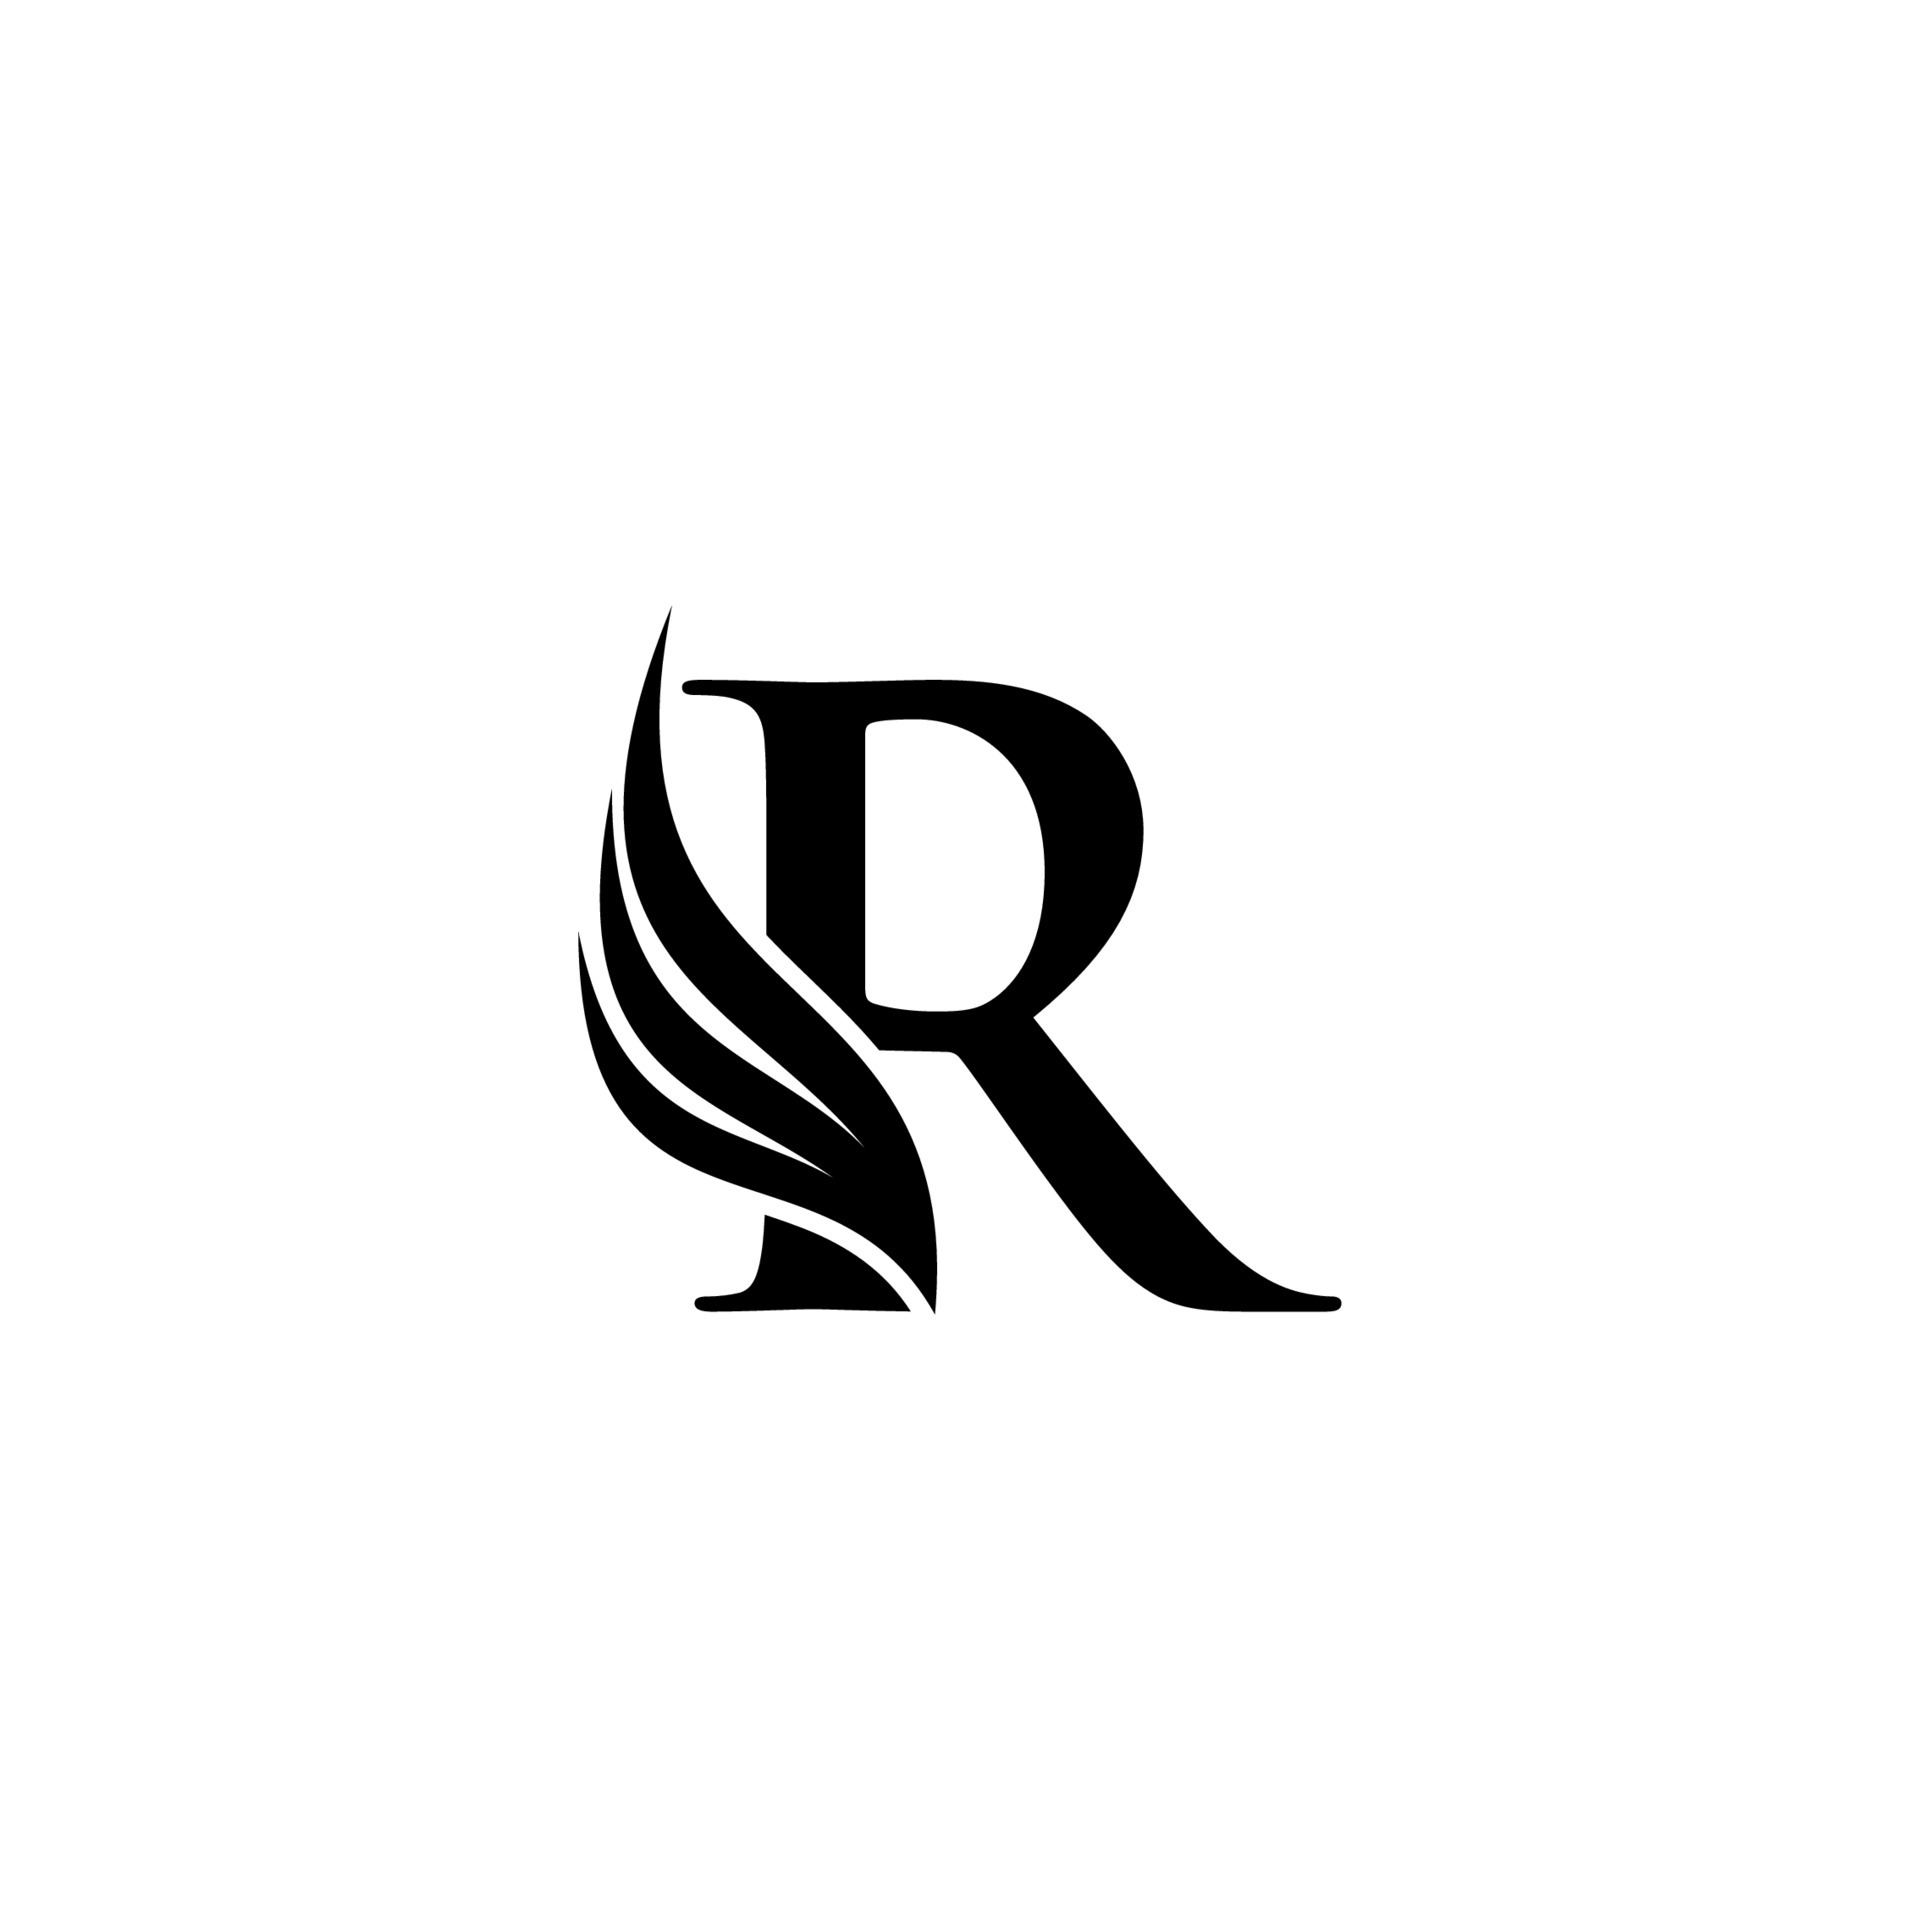 Logo chữ cái R đầu tiên và biểu tượng cánh sẽ là yếu tố thiết kế quan trọng cho thương hiệu của bạn. Hình ảnh mới lạ và đầy sáng tạo sẽ giúp sản phẩm của bạn nổi bật hơn so với các sản phẩm khác. Khám phá những hình ảnh đẹp và đầy cảm hứng, và tải xuống để bắt đầu thiết kế ngay hôm nay.